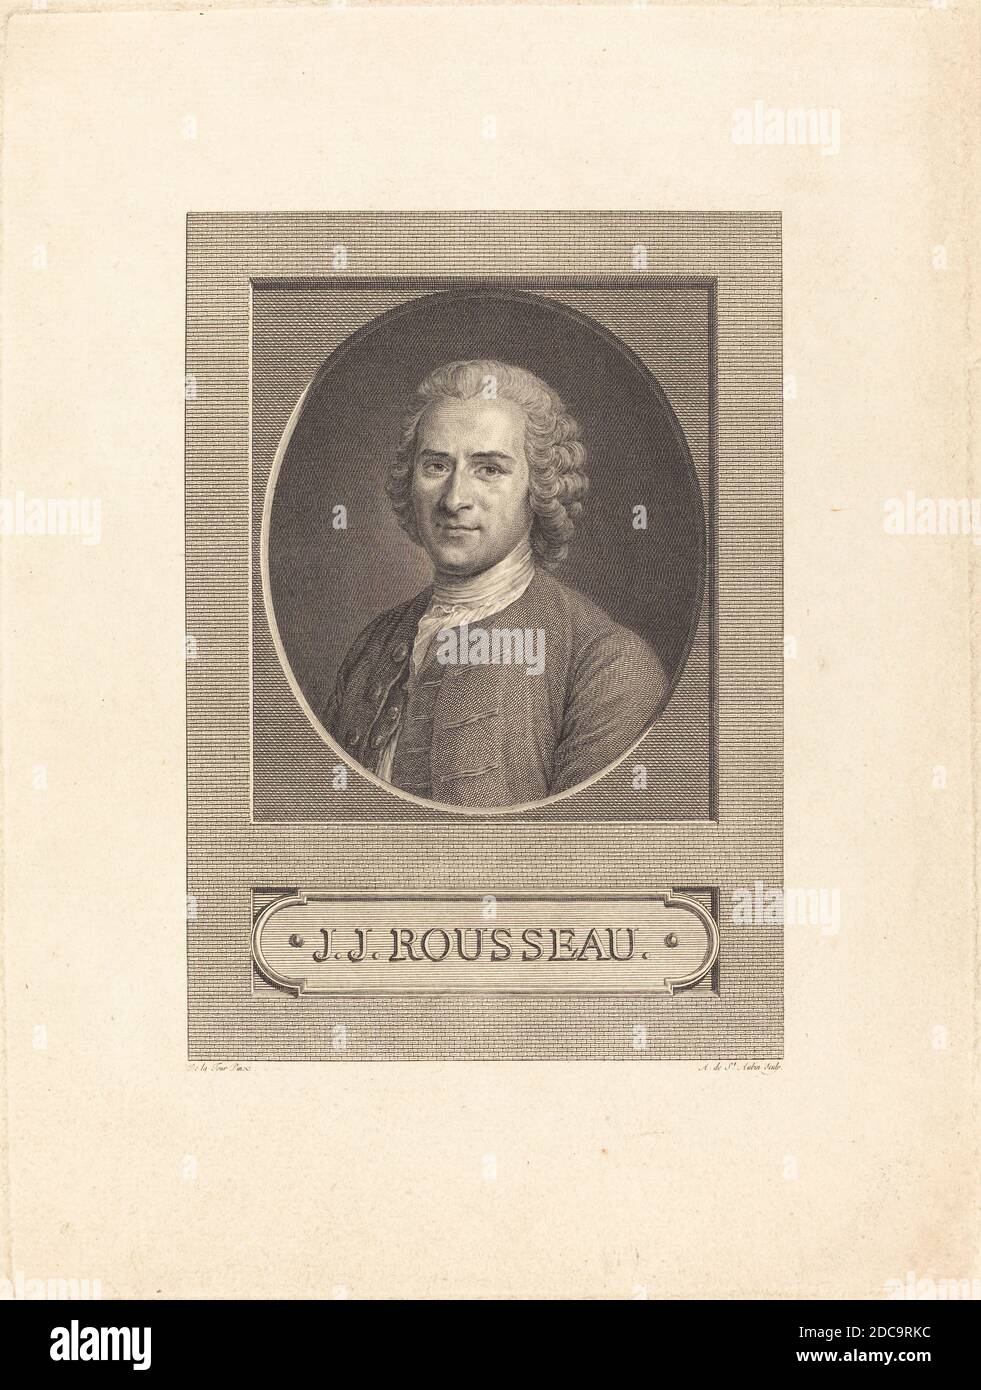 Augustin de Saint-Aubin, (artiste), français, 1736 - 1807, Maurice-Quentin de la Tour, (artiste après), français, 1704 - 1788, J.J. Rousseau Banque D'Images